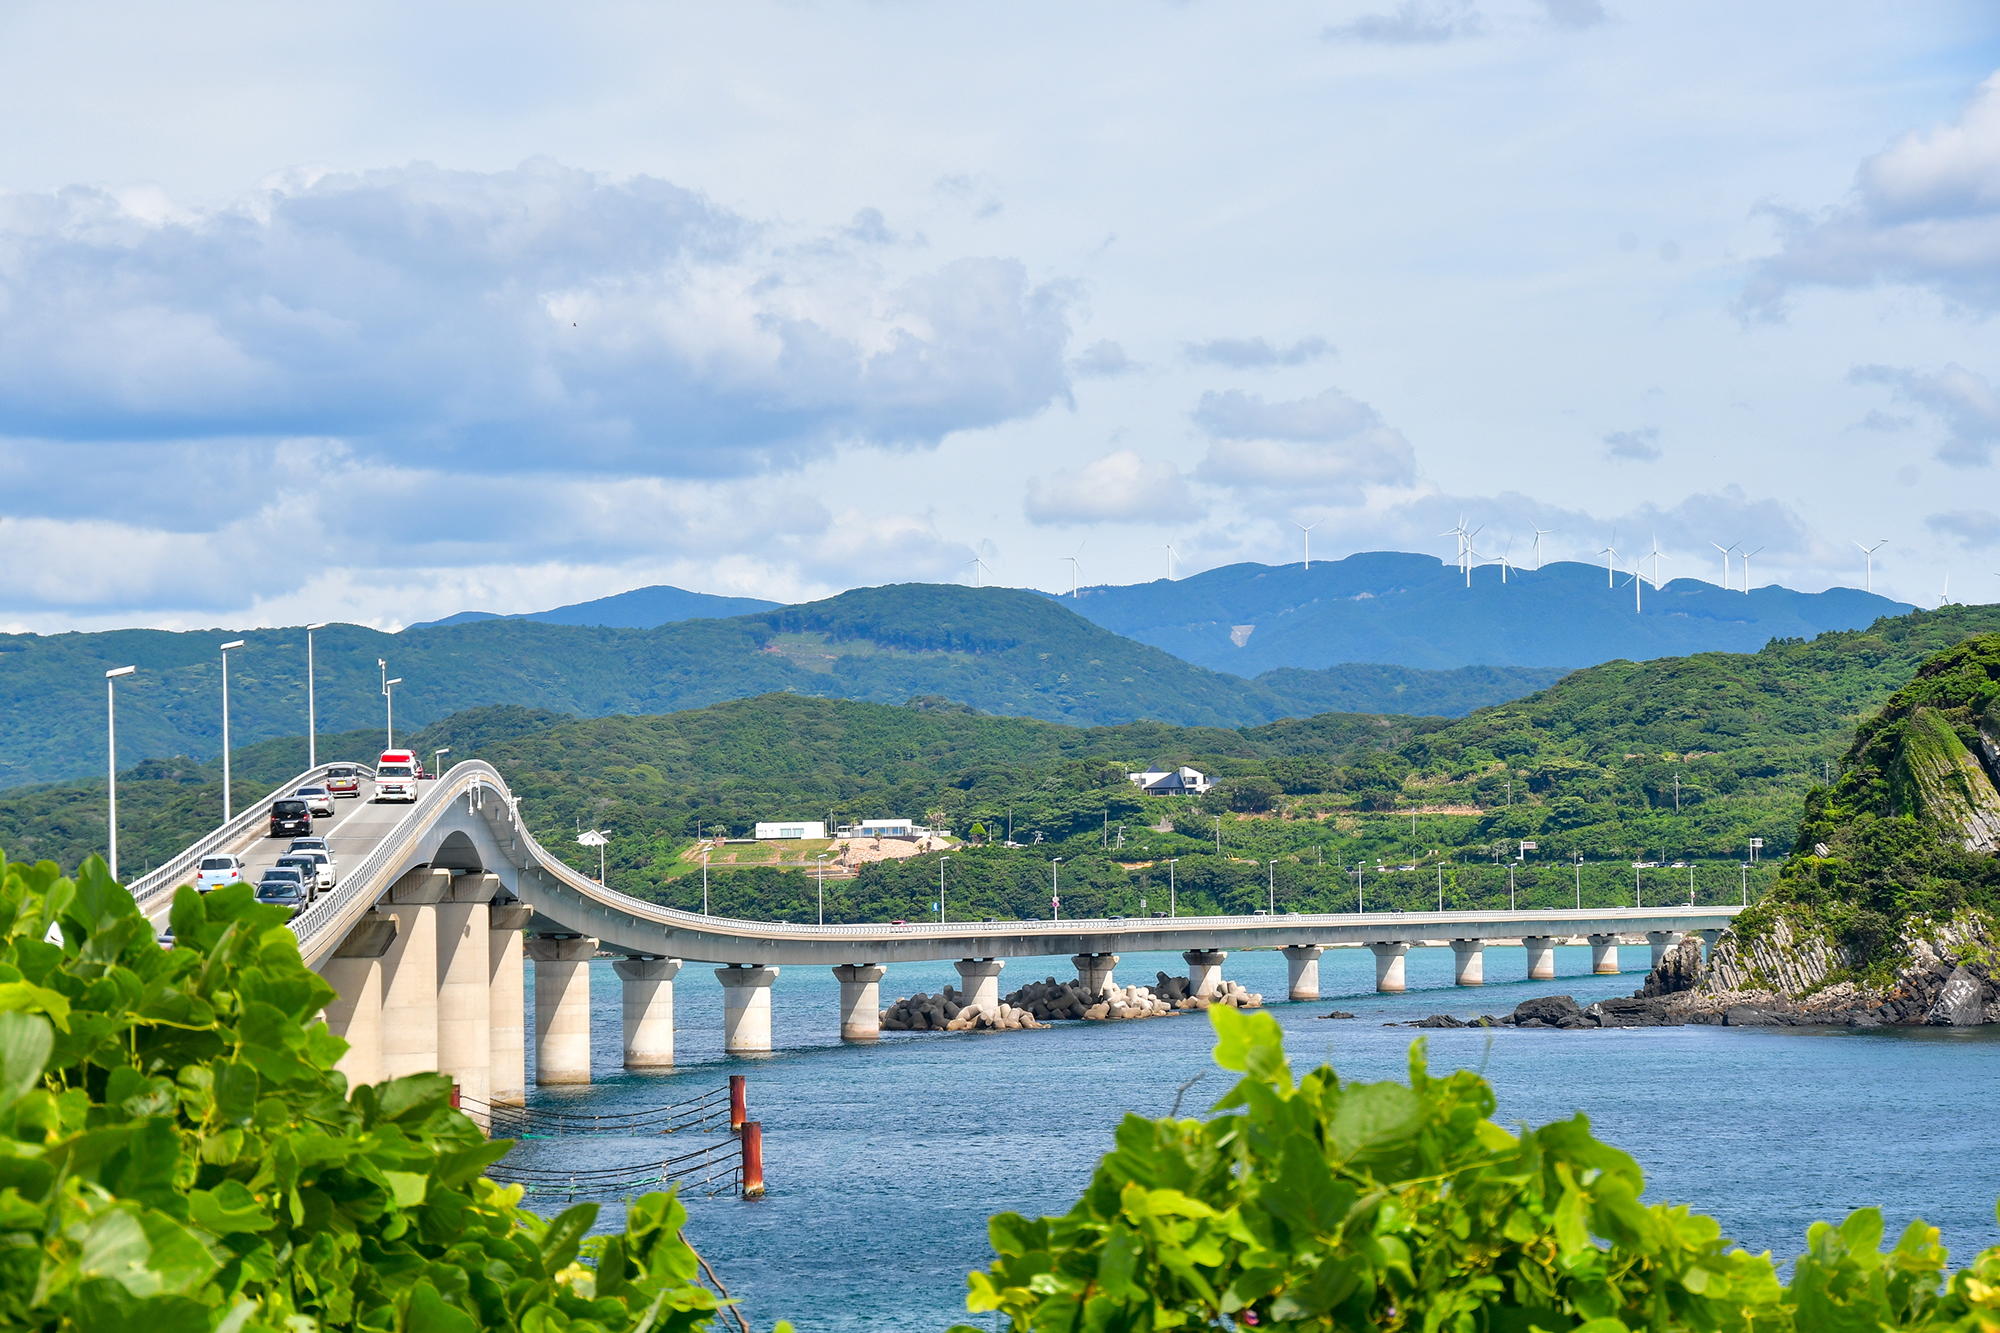 日本第2の長さと言われる1,780mの角島大橋でした